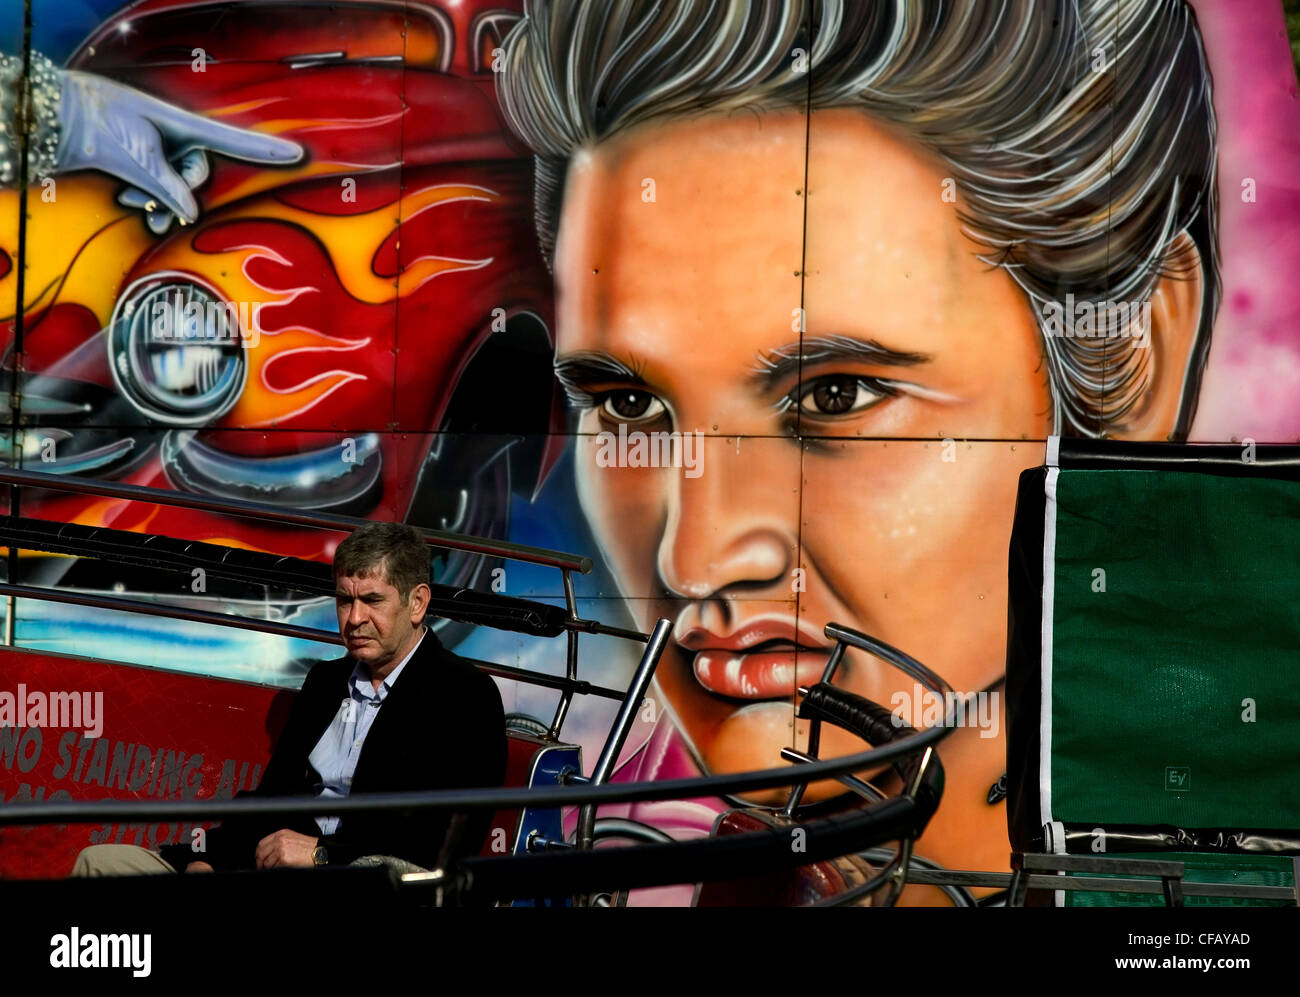 Expositions sur Hampstead Heath, Londres. Homme est assis sur le banc en face de wall mural avec visage d'Elvis Presley et de location Banque D'Images